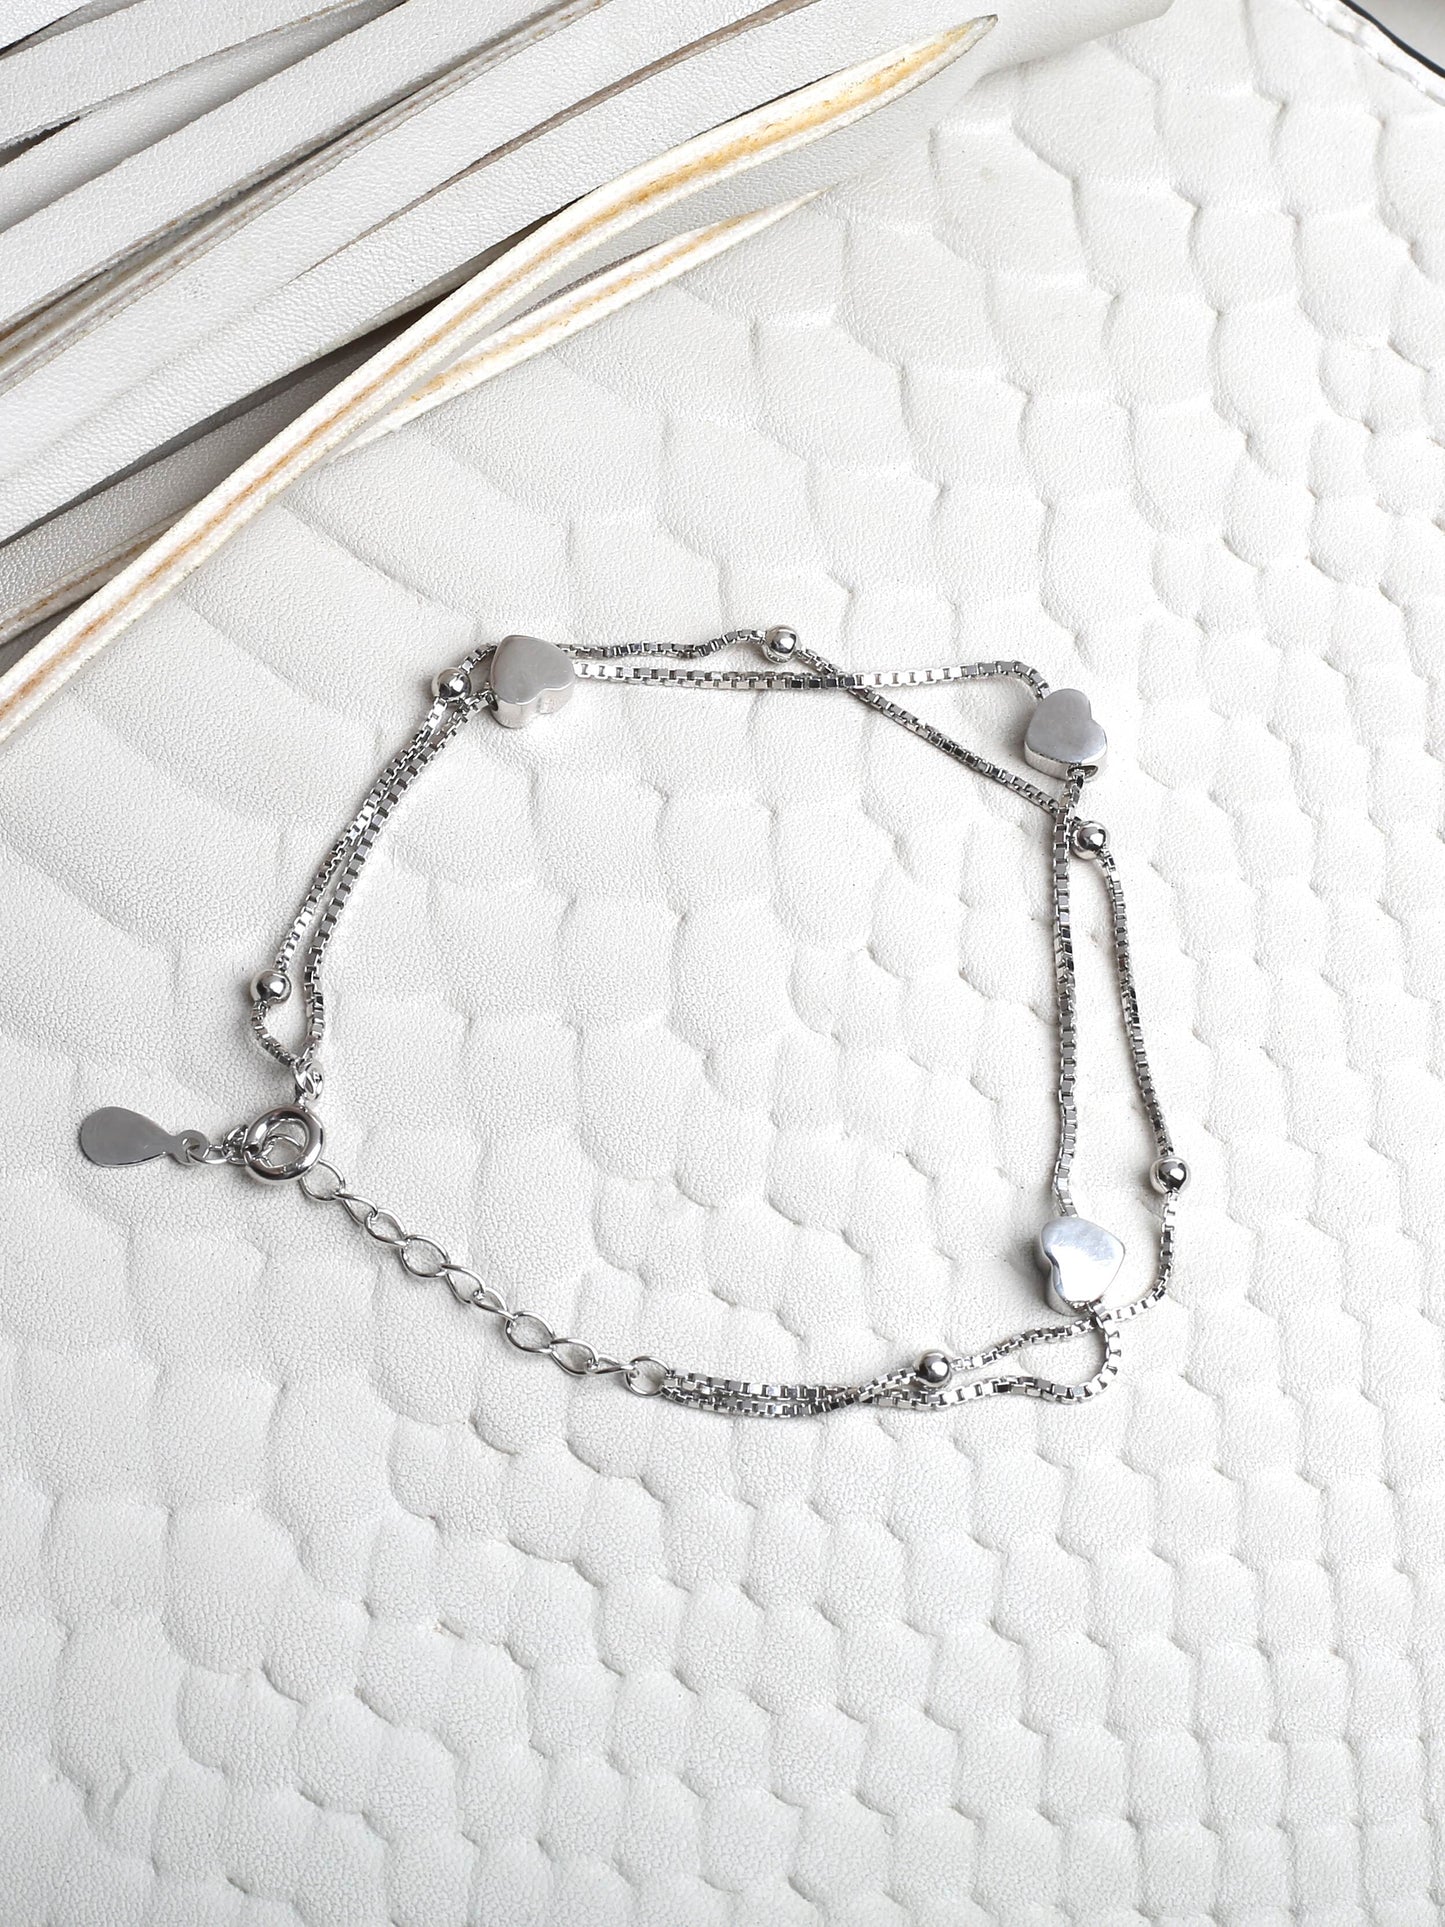 Heartfelt Harmony: Dual Layered Heart Shaped Bracelet in 925 Sterling Silver